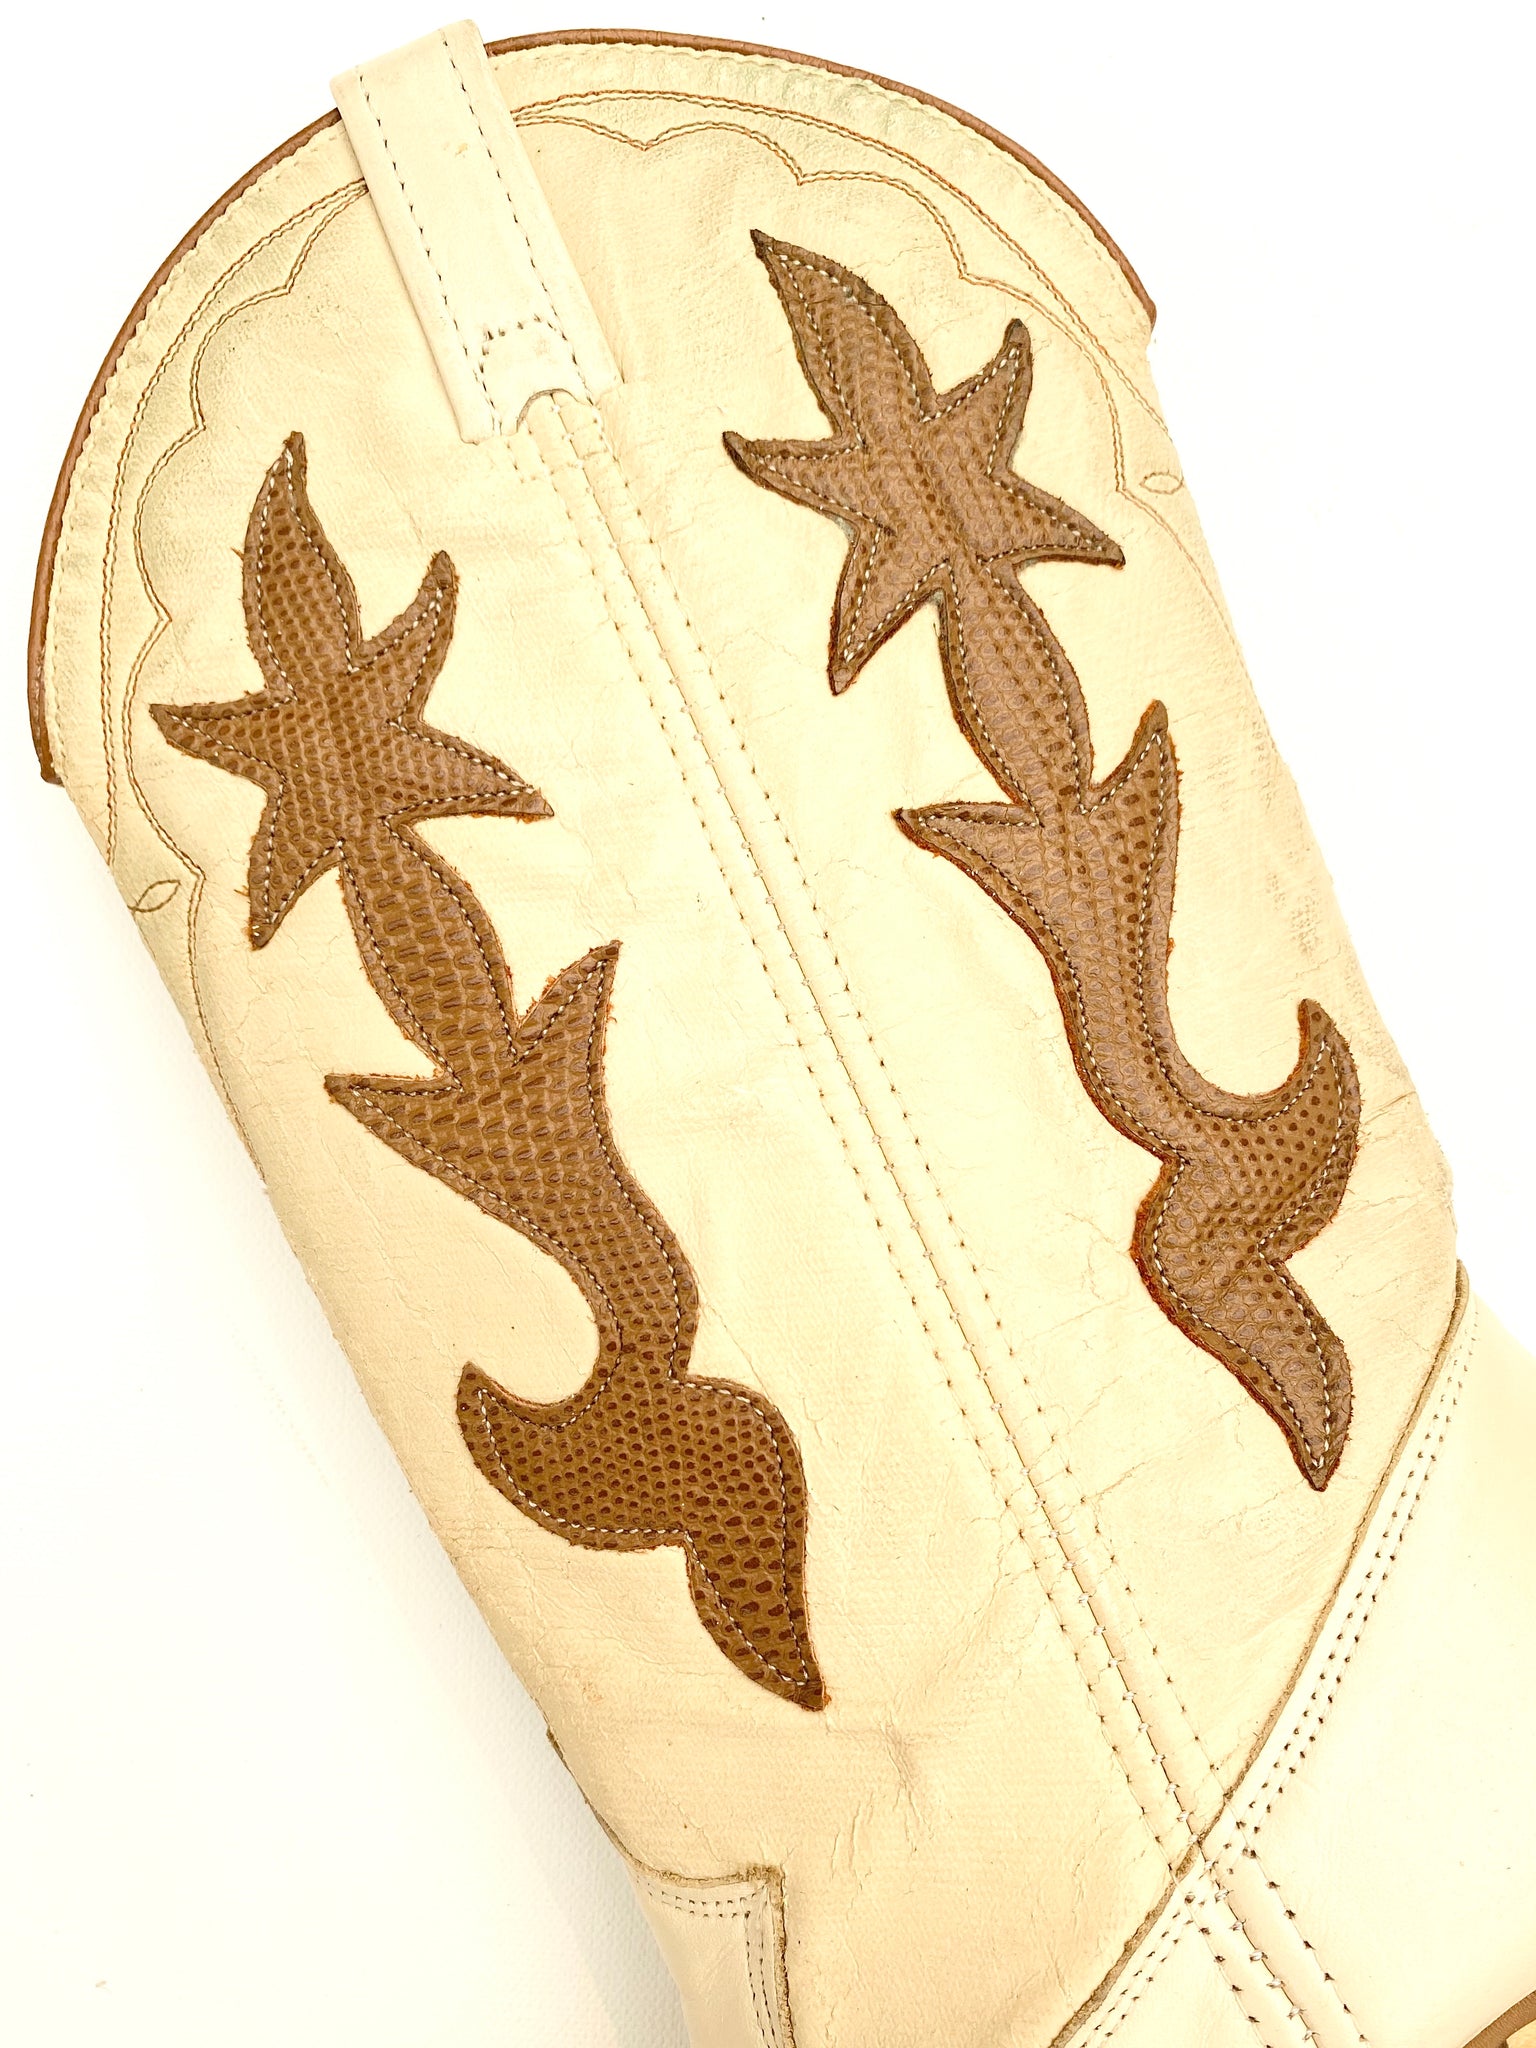 VINTAGE: Western Boots - Tan & Brown